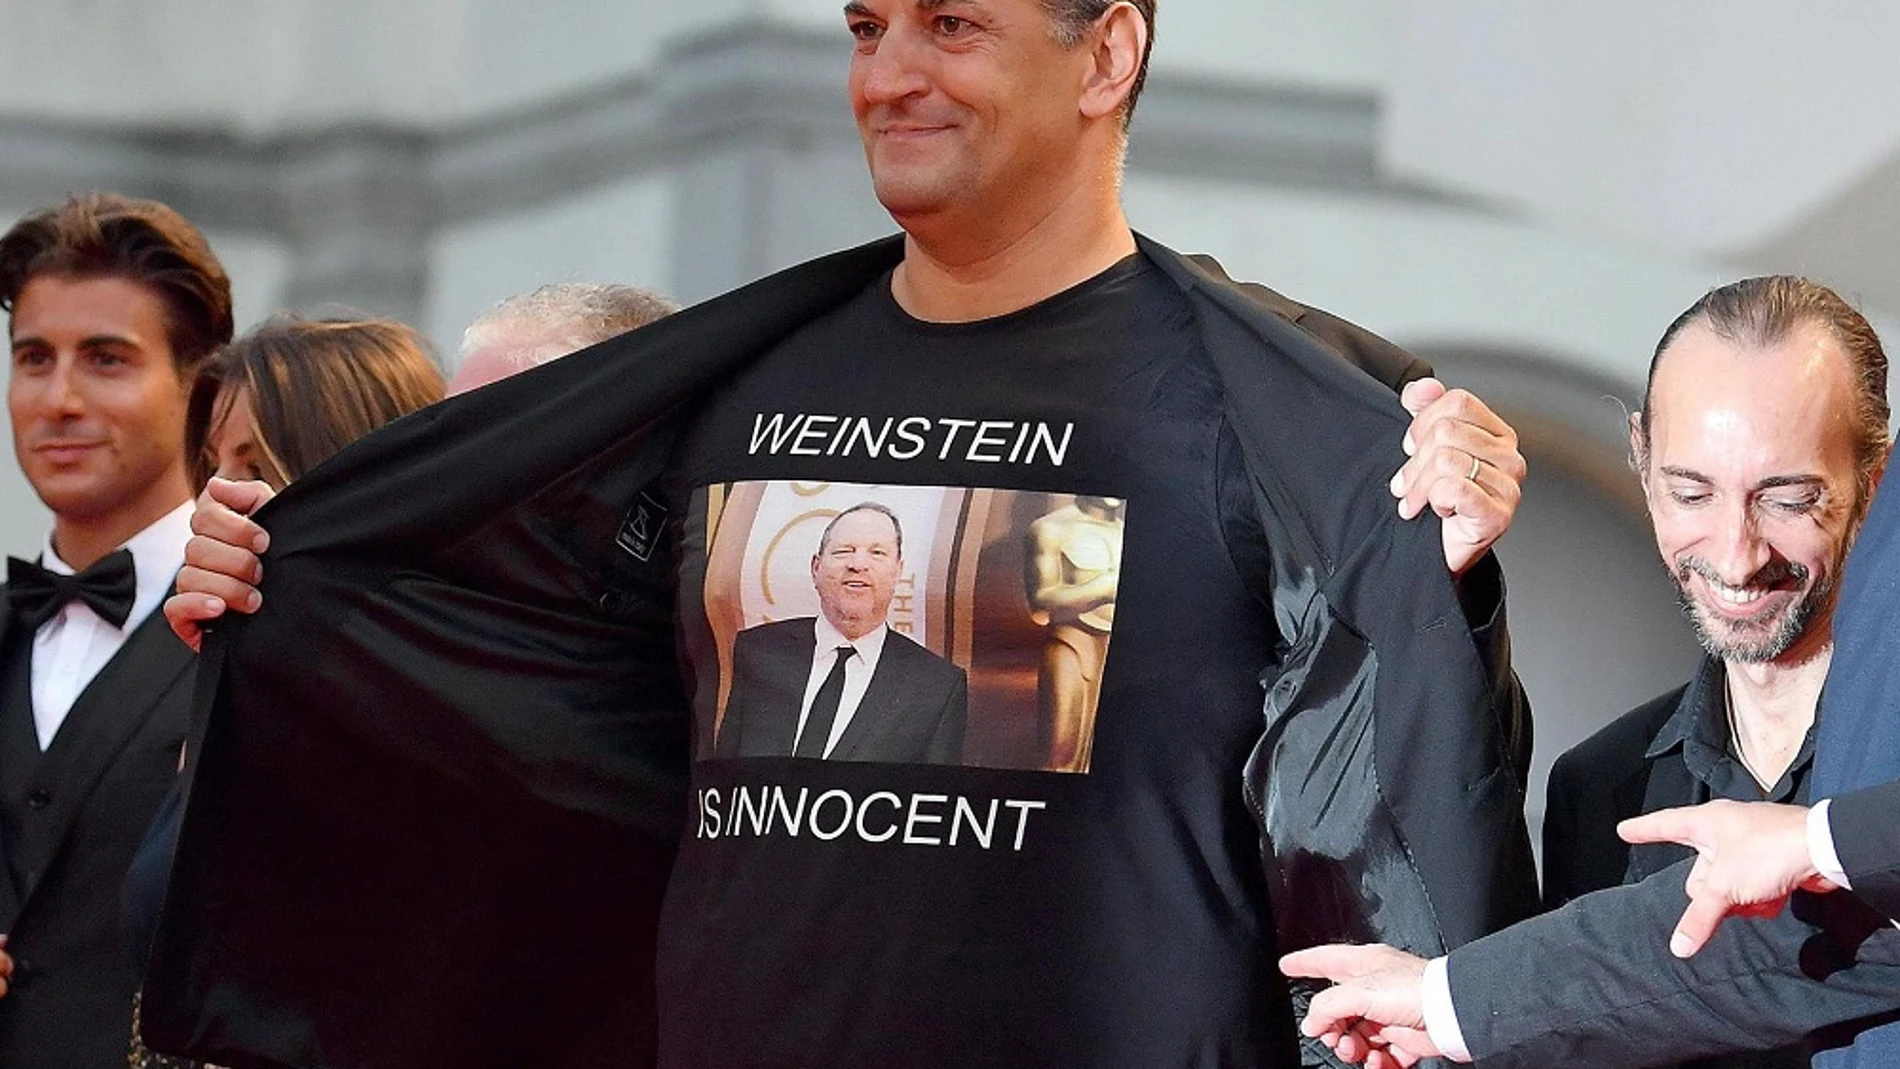 Imagen de un director italiano con una camiseta de 'Weinstein inocente'